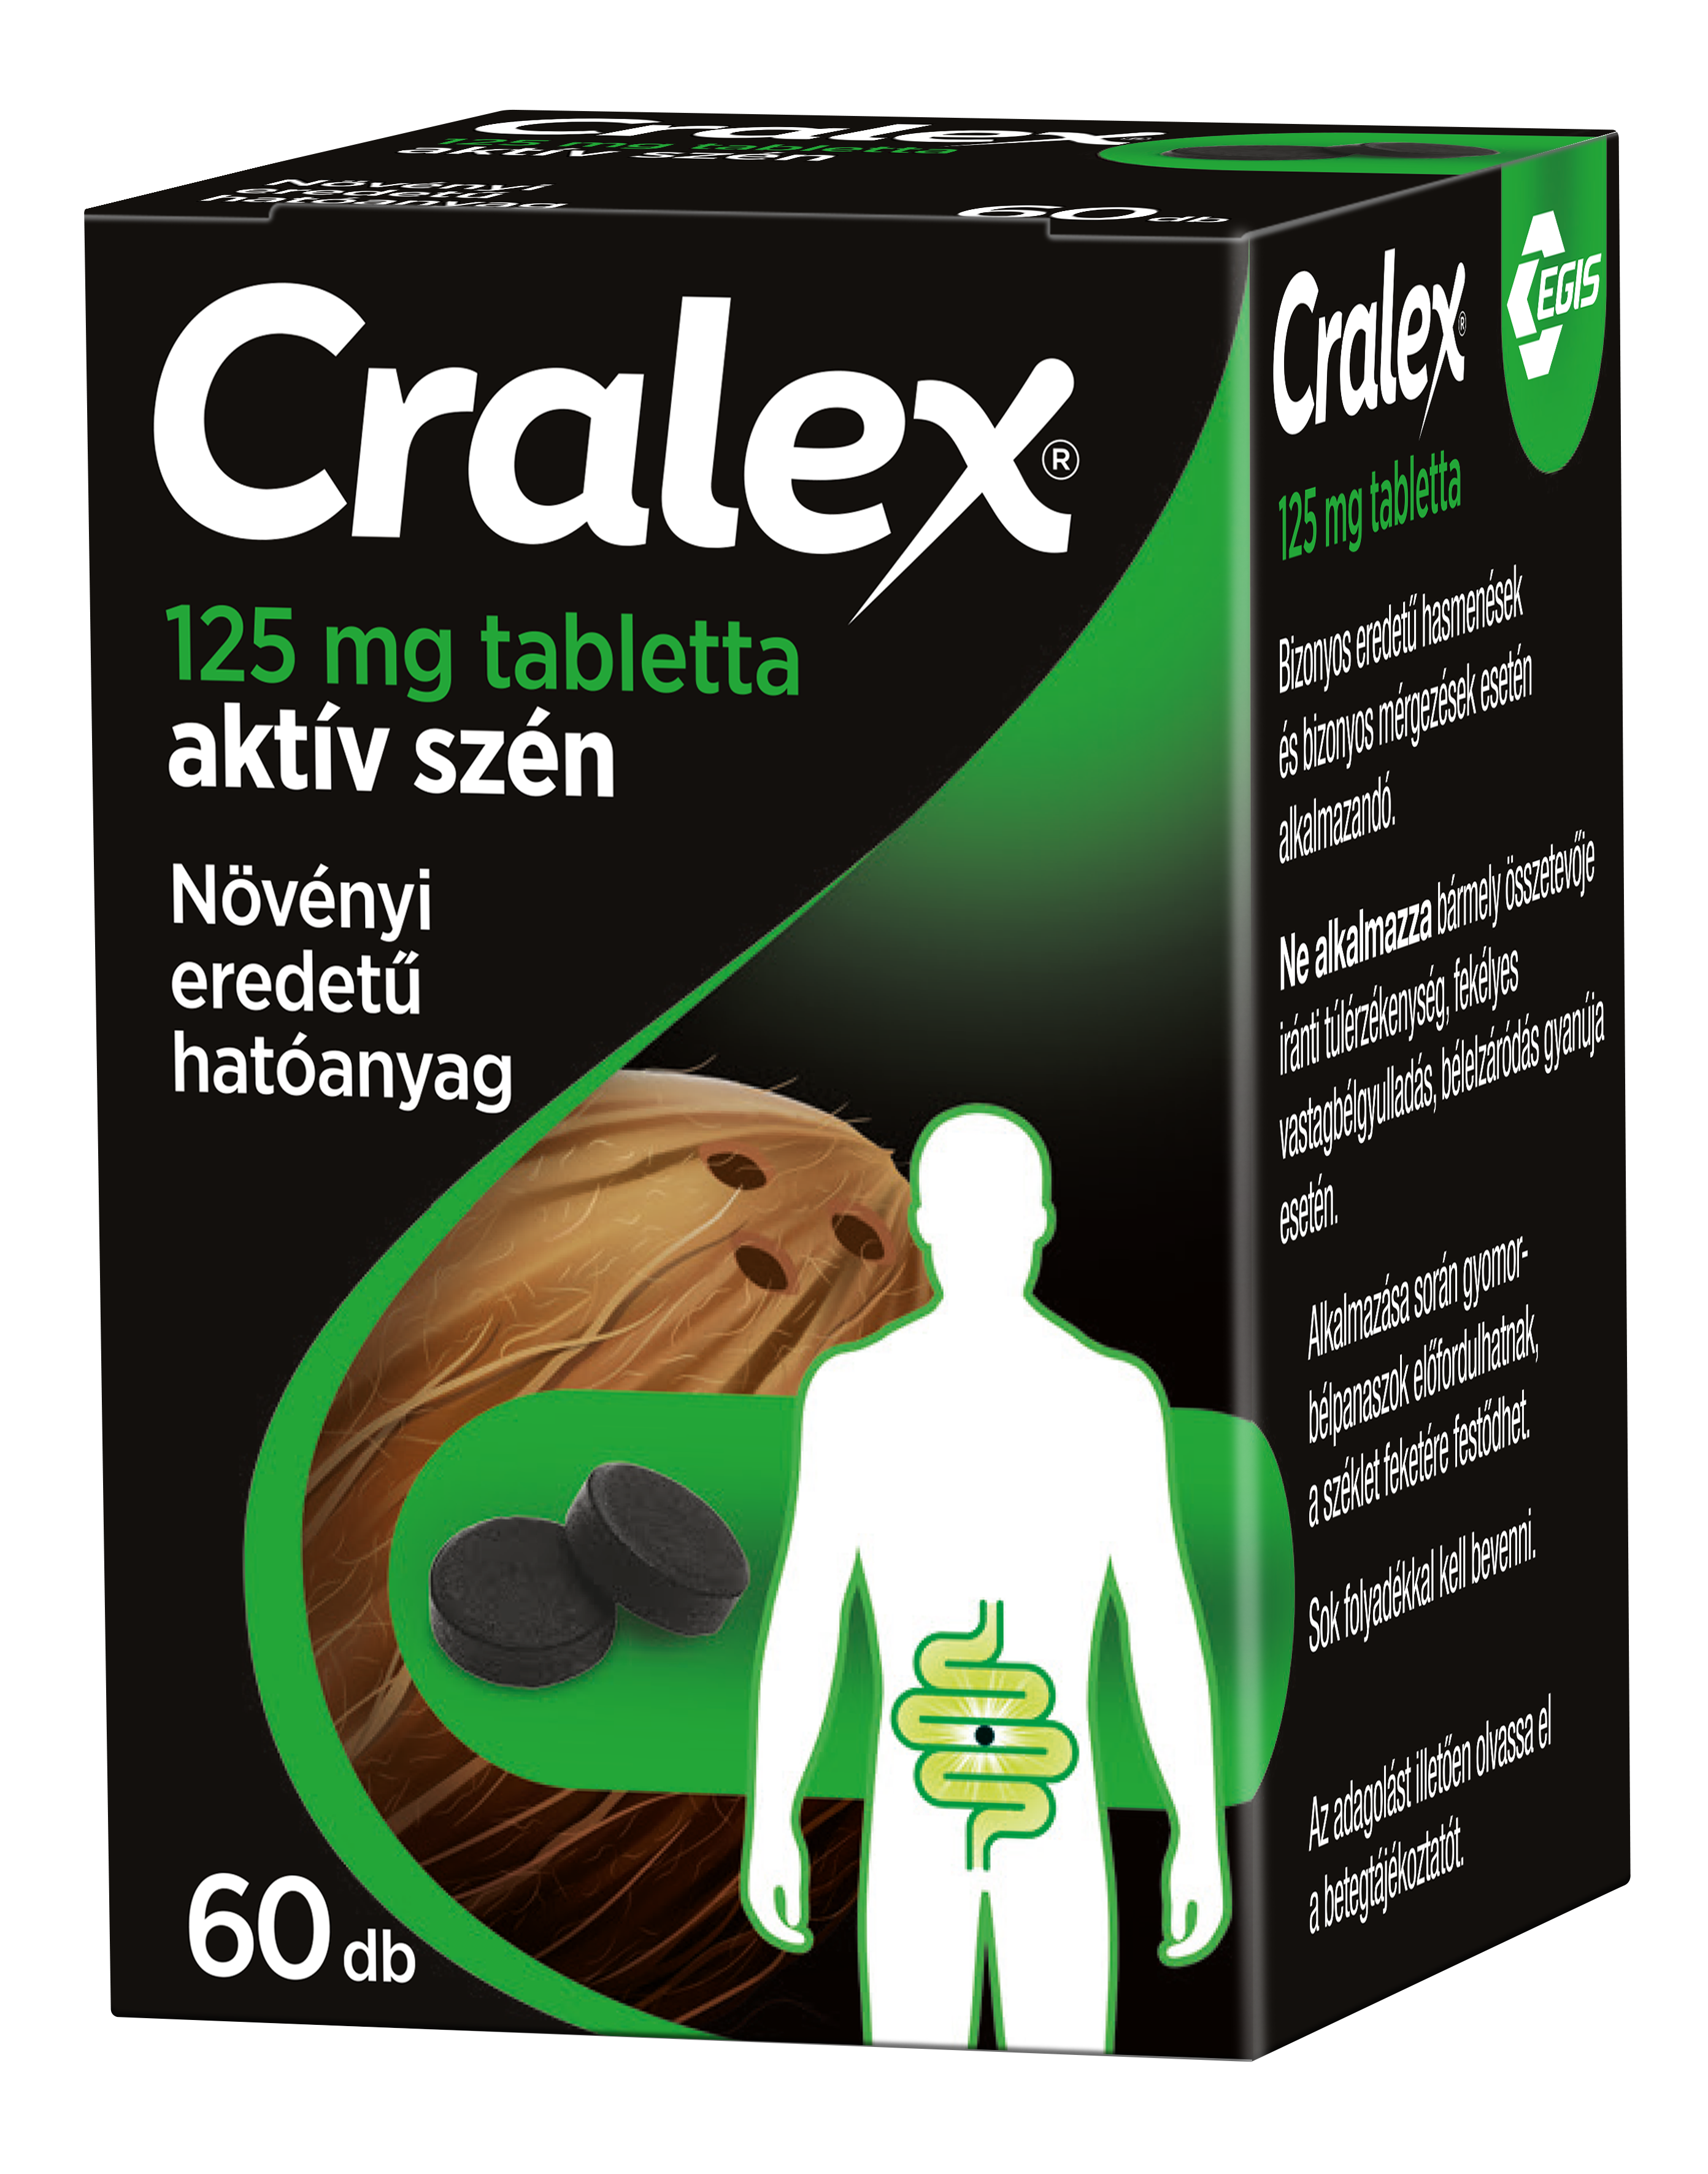 Cralex 125 mg tabletta